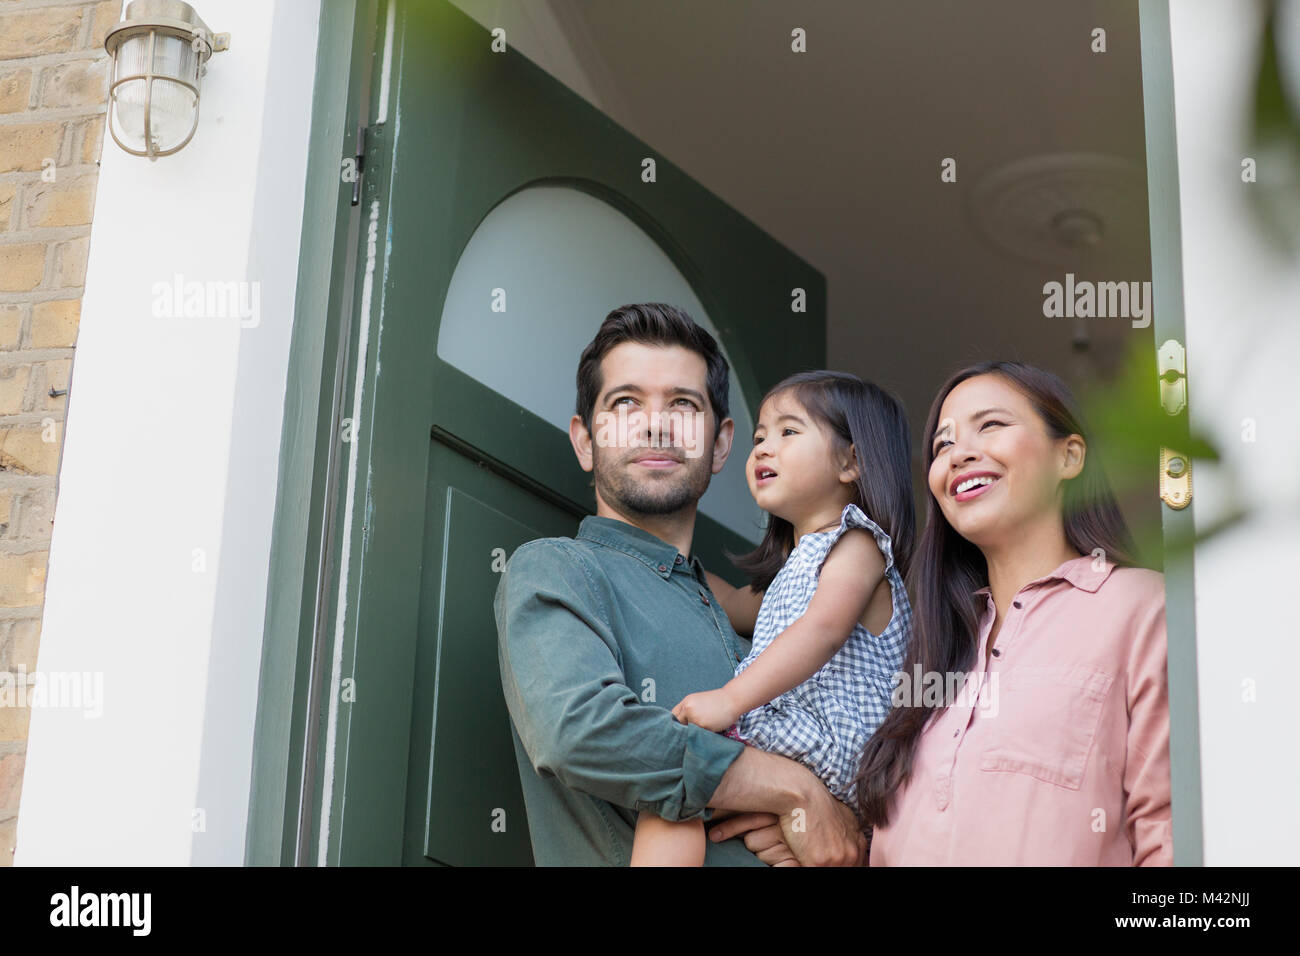 Family standing in doorway of home Stock Photo